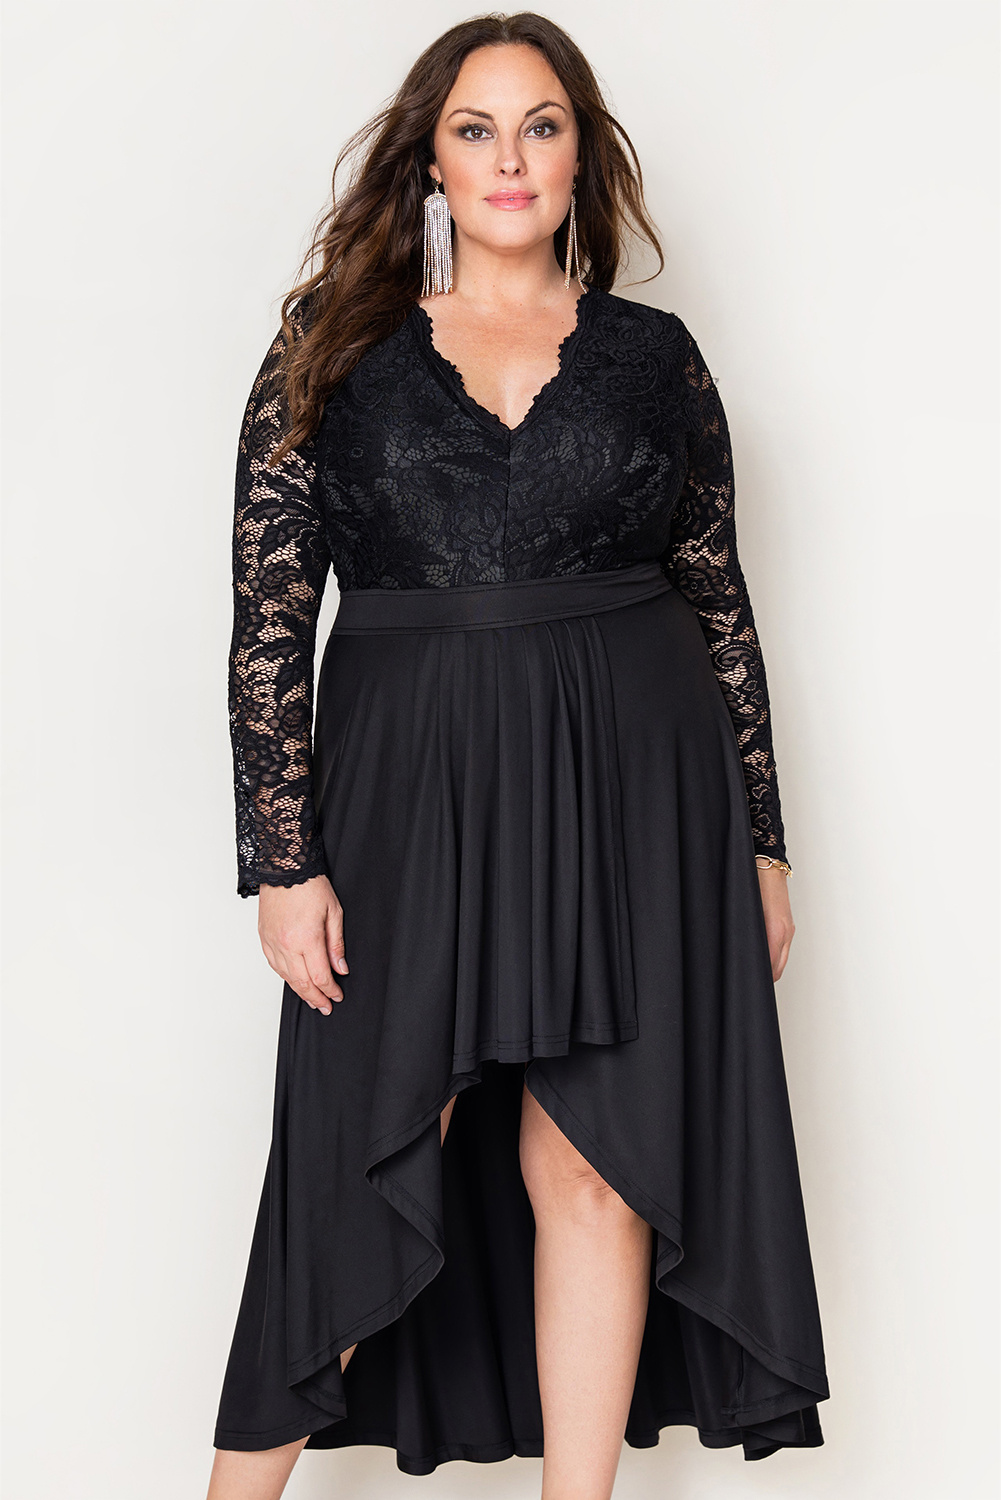 Black Plus Size High-Low Lace Contrast Evening Dress - eryre